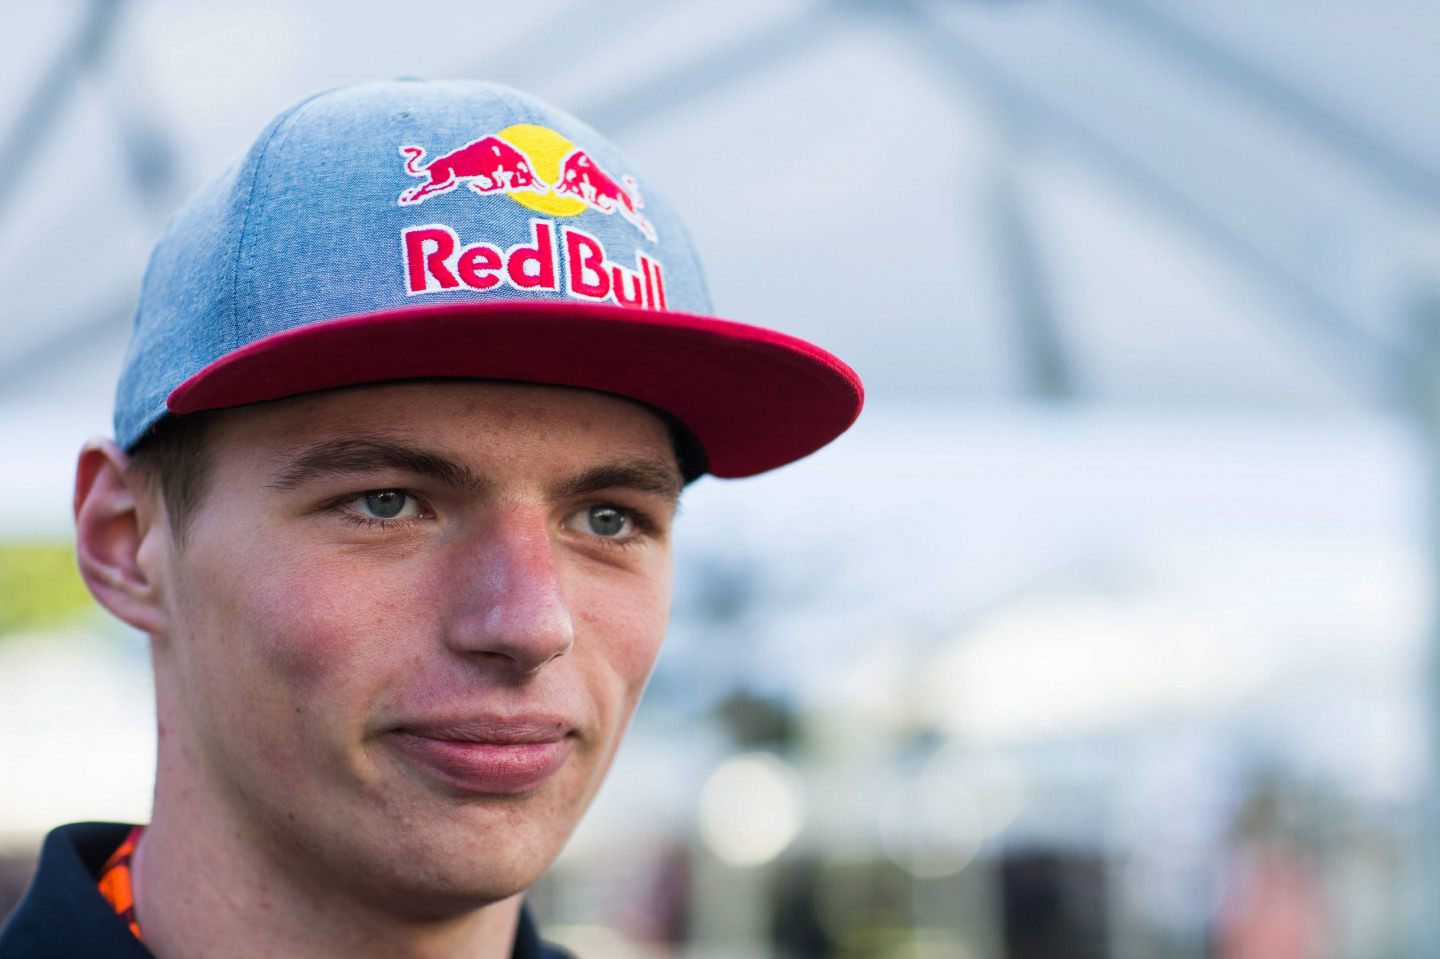 Макс Ферстаппен на Гран При Австралии-2015 © Red Bull Content Pool